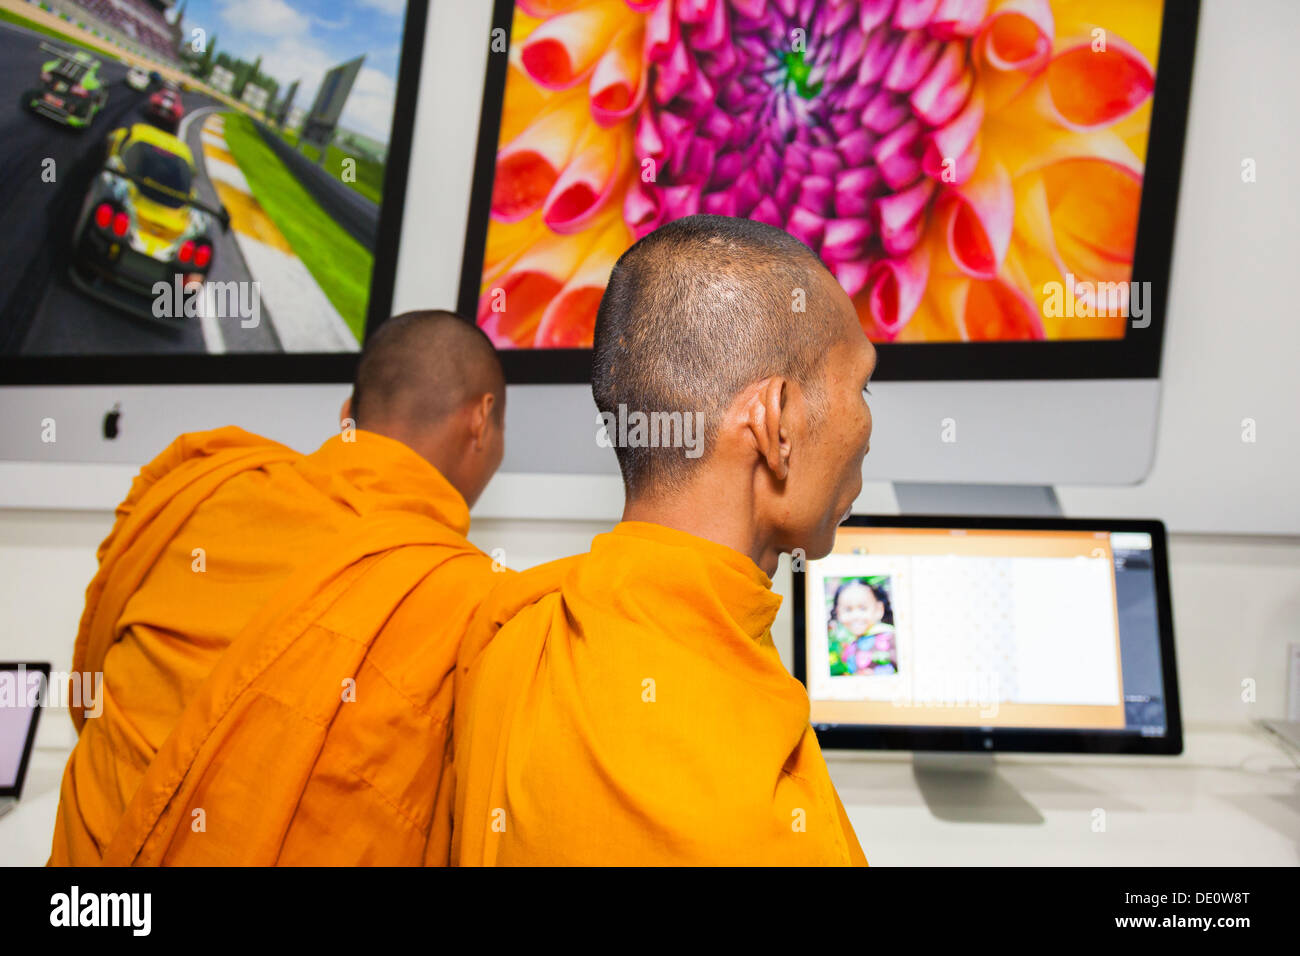 Les moines bouddhistes khmers robe safran dans l'examen des ordinateurs portables dans un revendeur Apple Store - Phnom Penh, Cambodge Banque D'Images